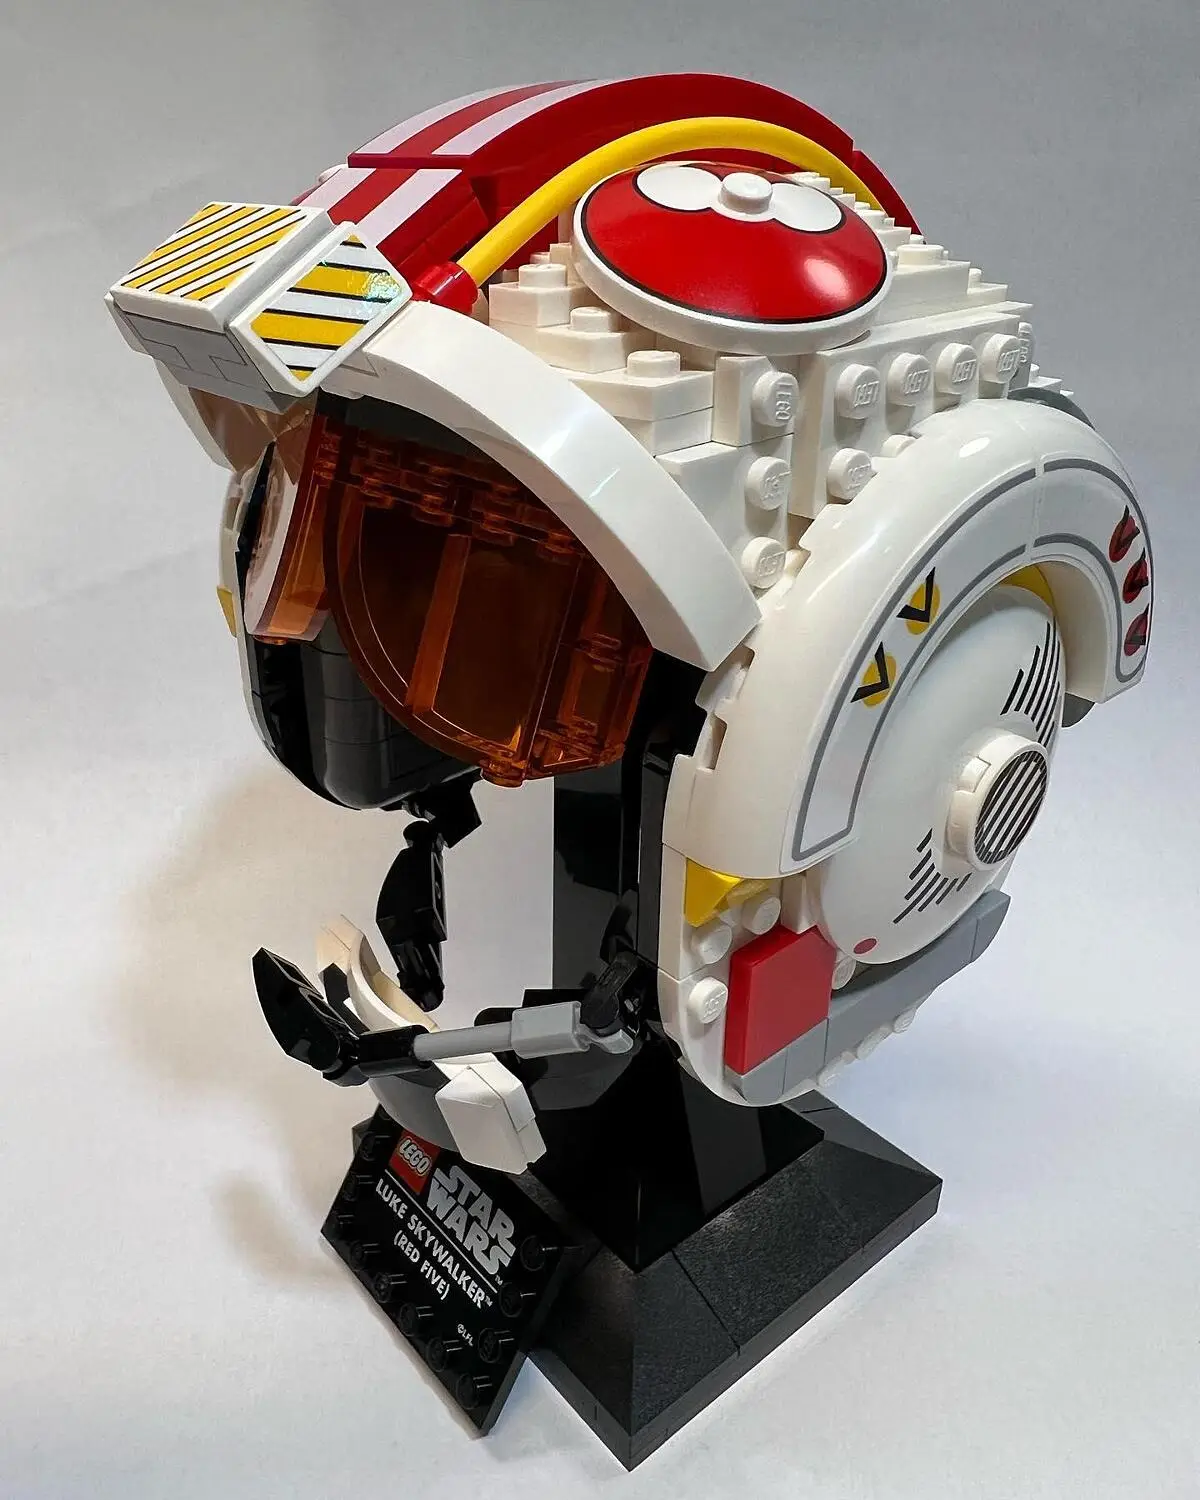 LEGO 75327 Star Wars Le Casque Red Five De Luke Skywalker, Kit de  Construction de Modèle Réduit à Collectionner, Maquette à Construire,  Décoration et